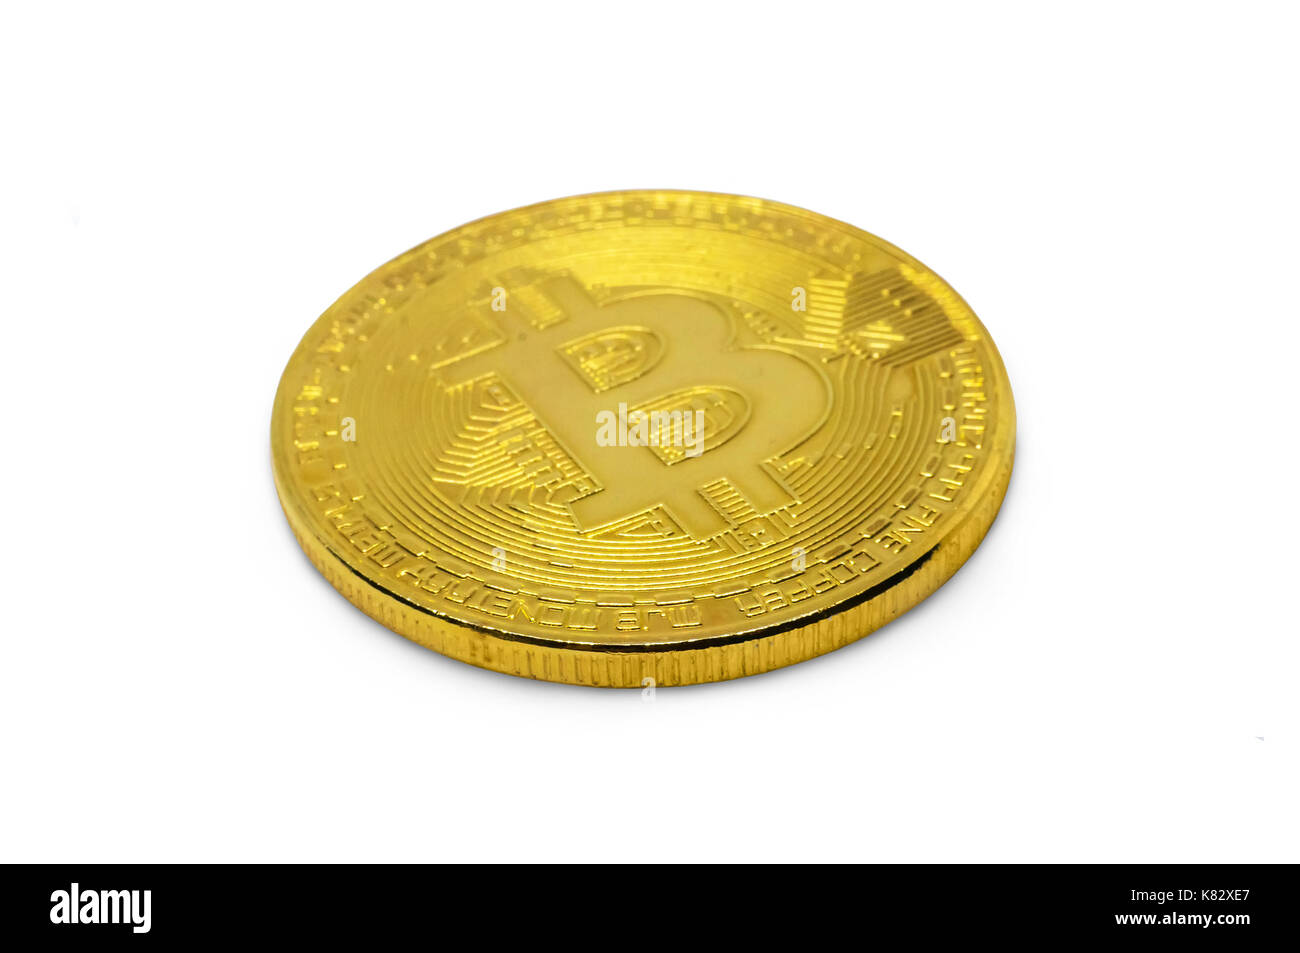 Bitcoin or isolé sur fond blanc. Pièce d'or brillant avec le symbole des bitcoins couchée sur le côté, sur un tableau blanc, close-up Banque D'Images